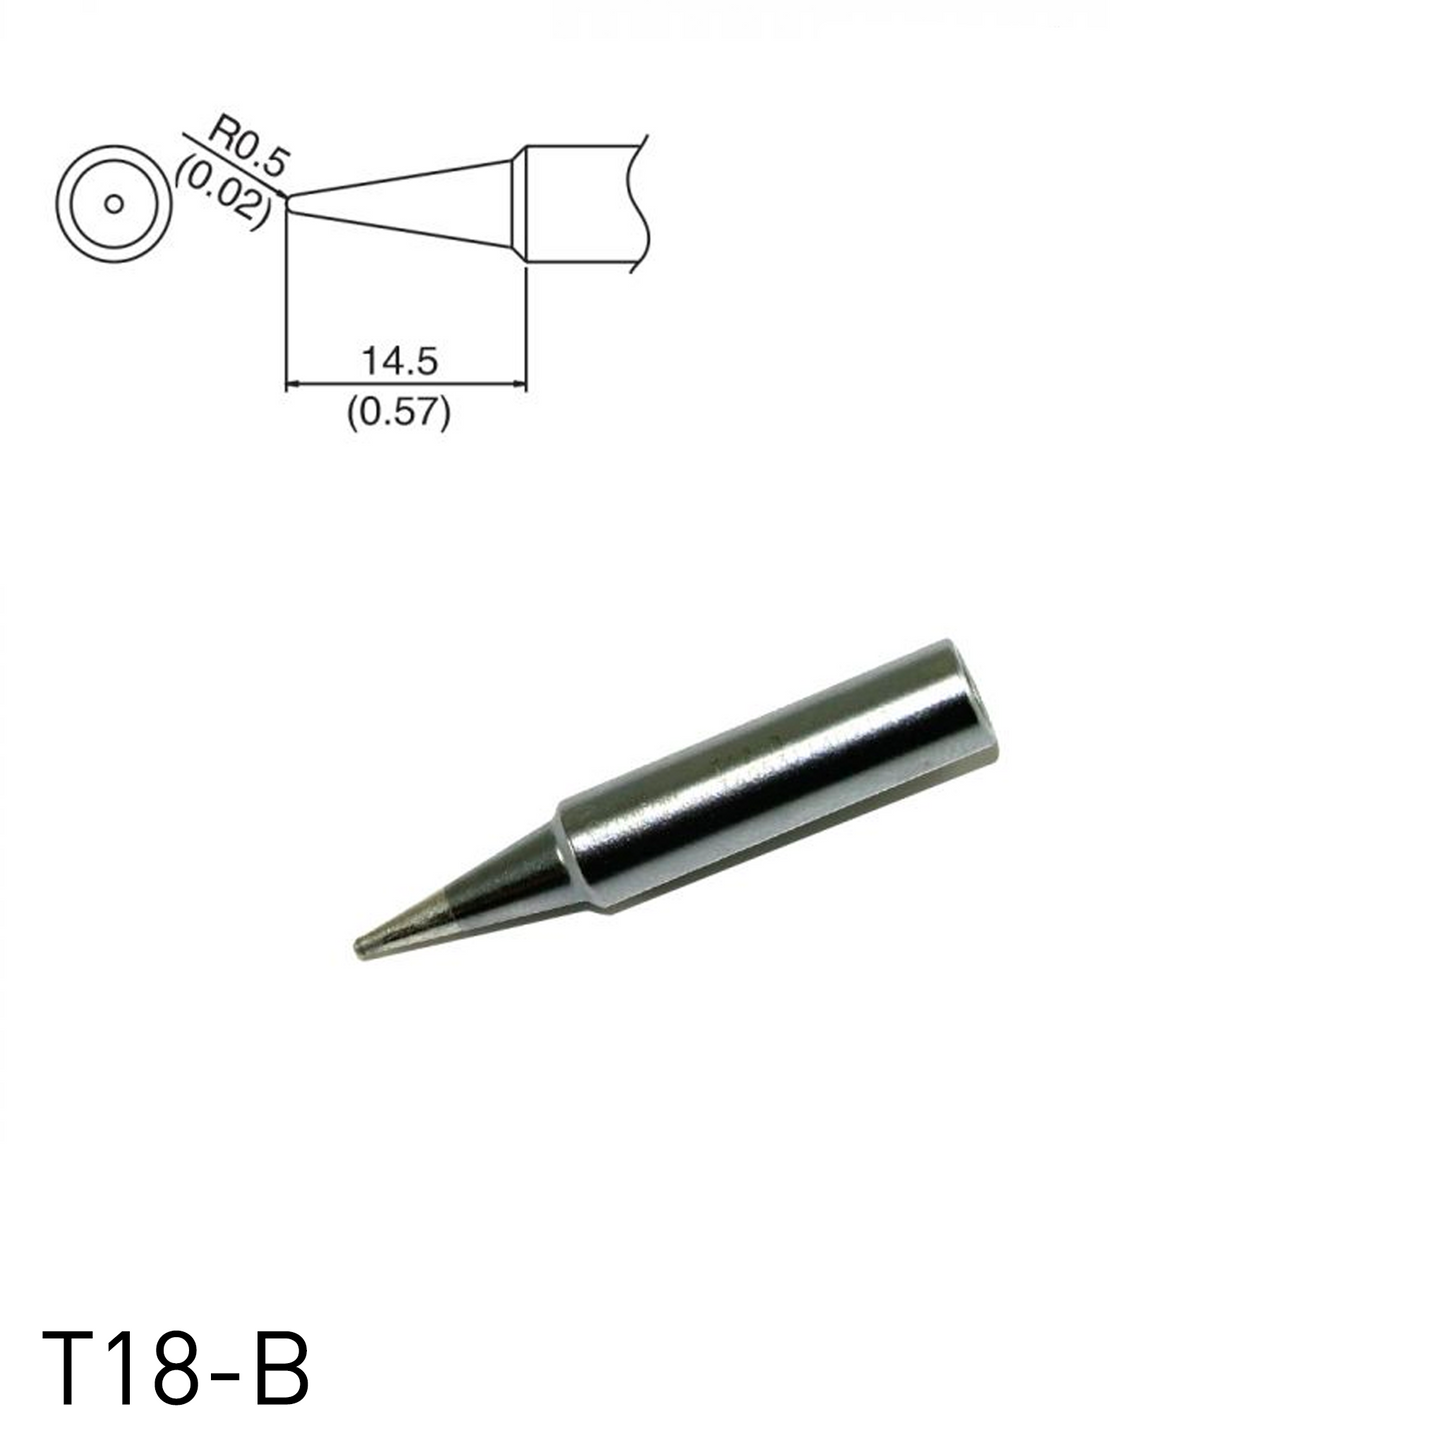 Hakko T18-B Shape-B Soldering Tip for soldering station FX888, FX888D, FX889, FR701, FR702, FX600 & soldering iron FX8801, FX600